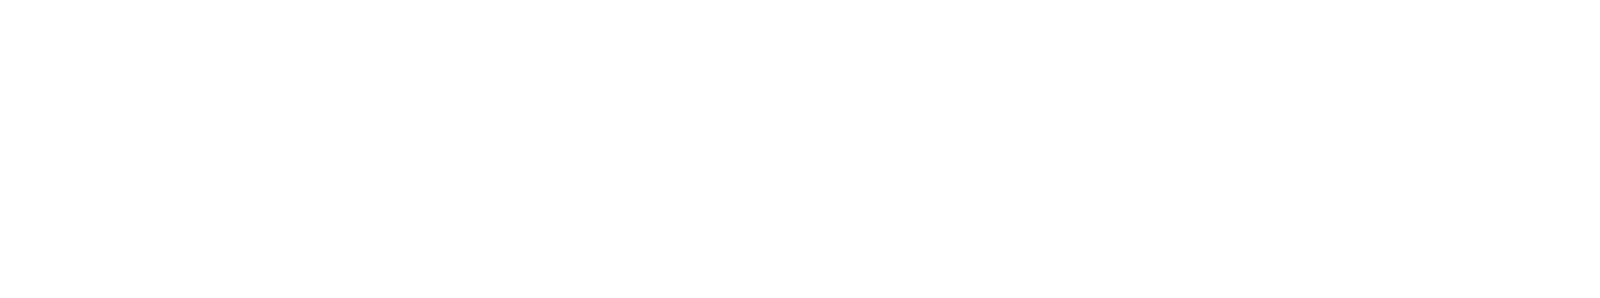 Masonite logo grand pour les fonds sombres (PNG transparent)